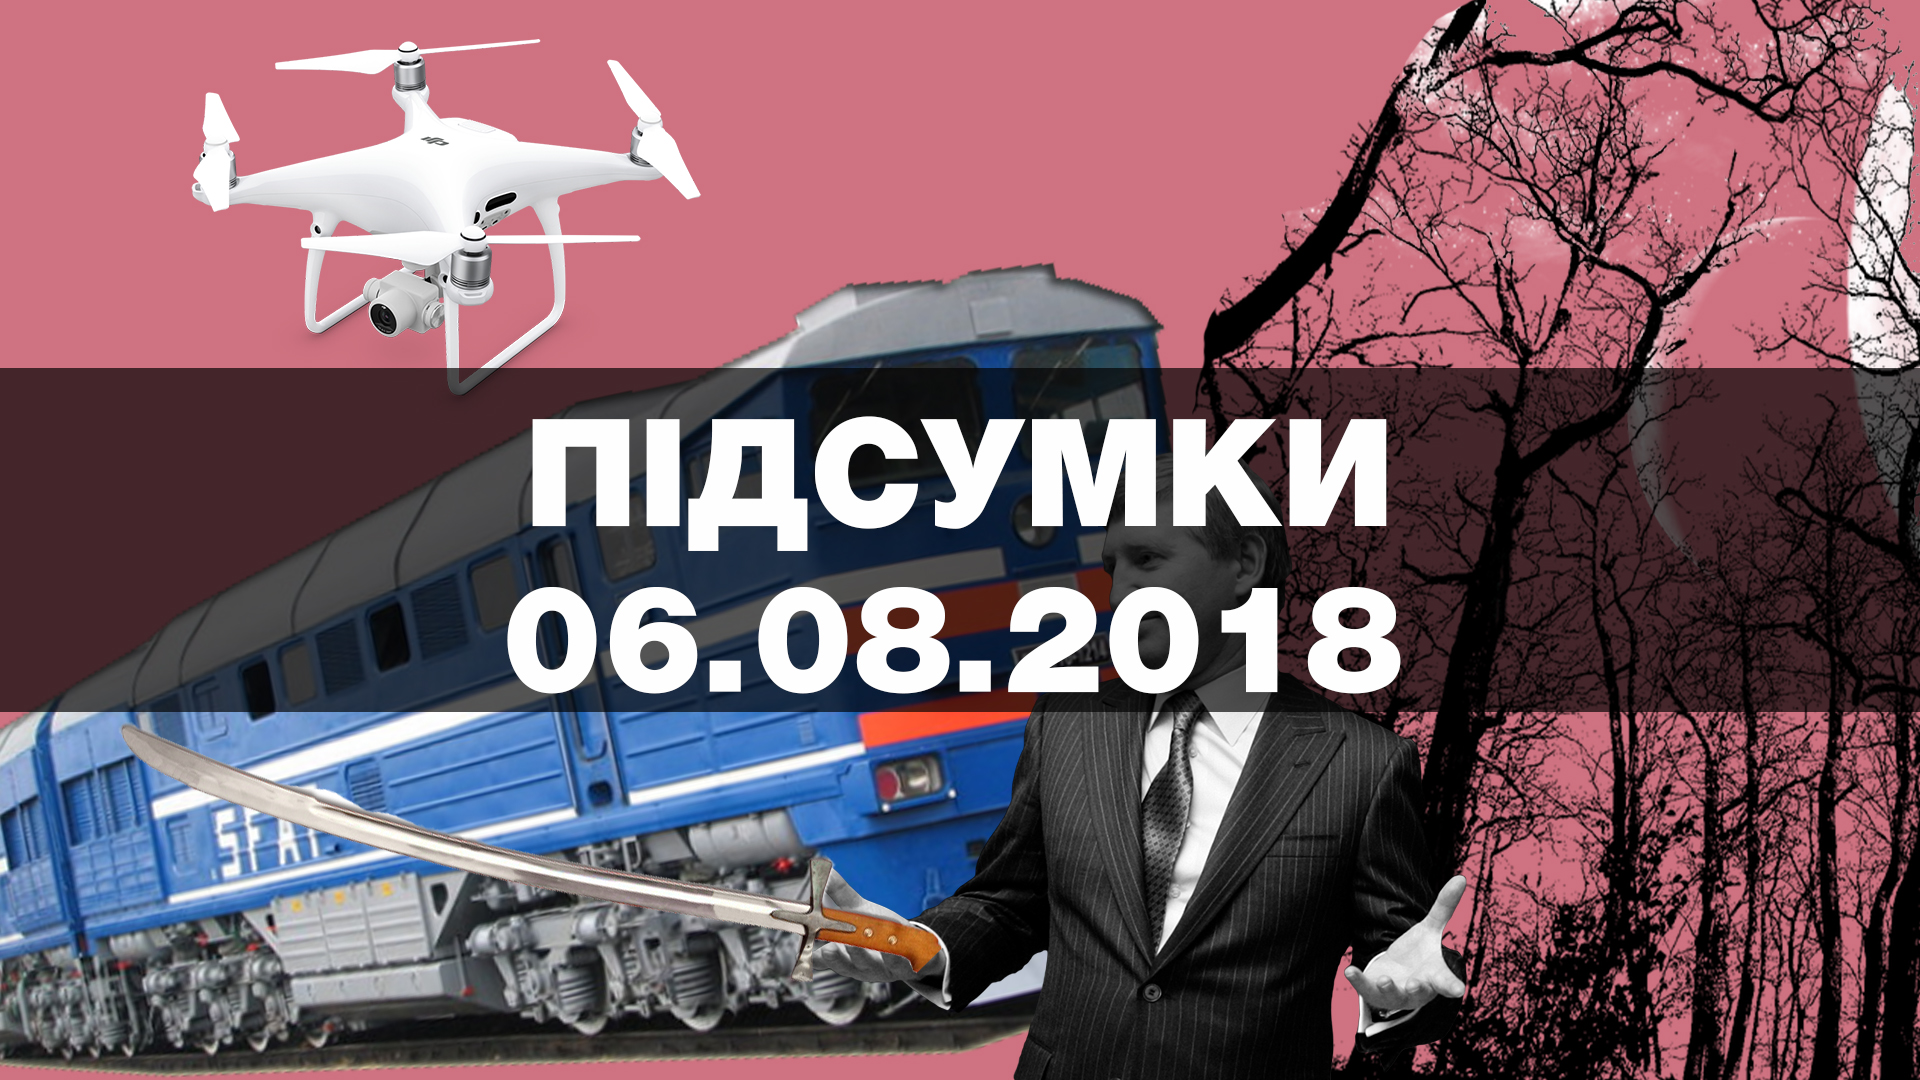 Ахметов отримав контроль над черговим підприємством, погрози голові “Нафтогазу” та нові рейси від лоукостера – найважливіші новини понеділка за 60 секунд